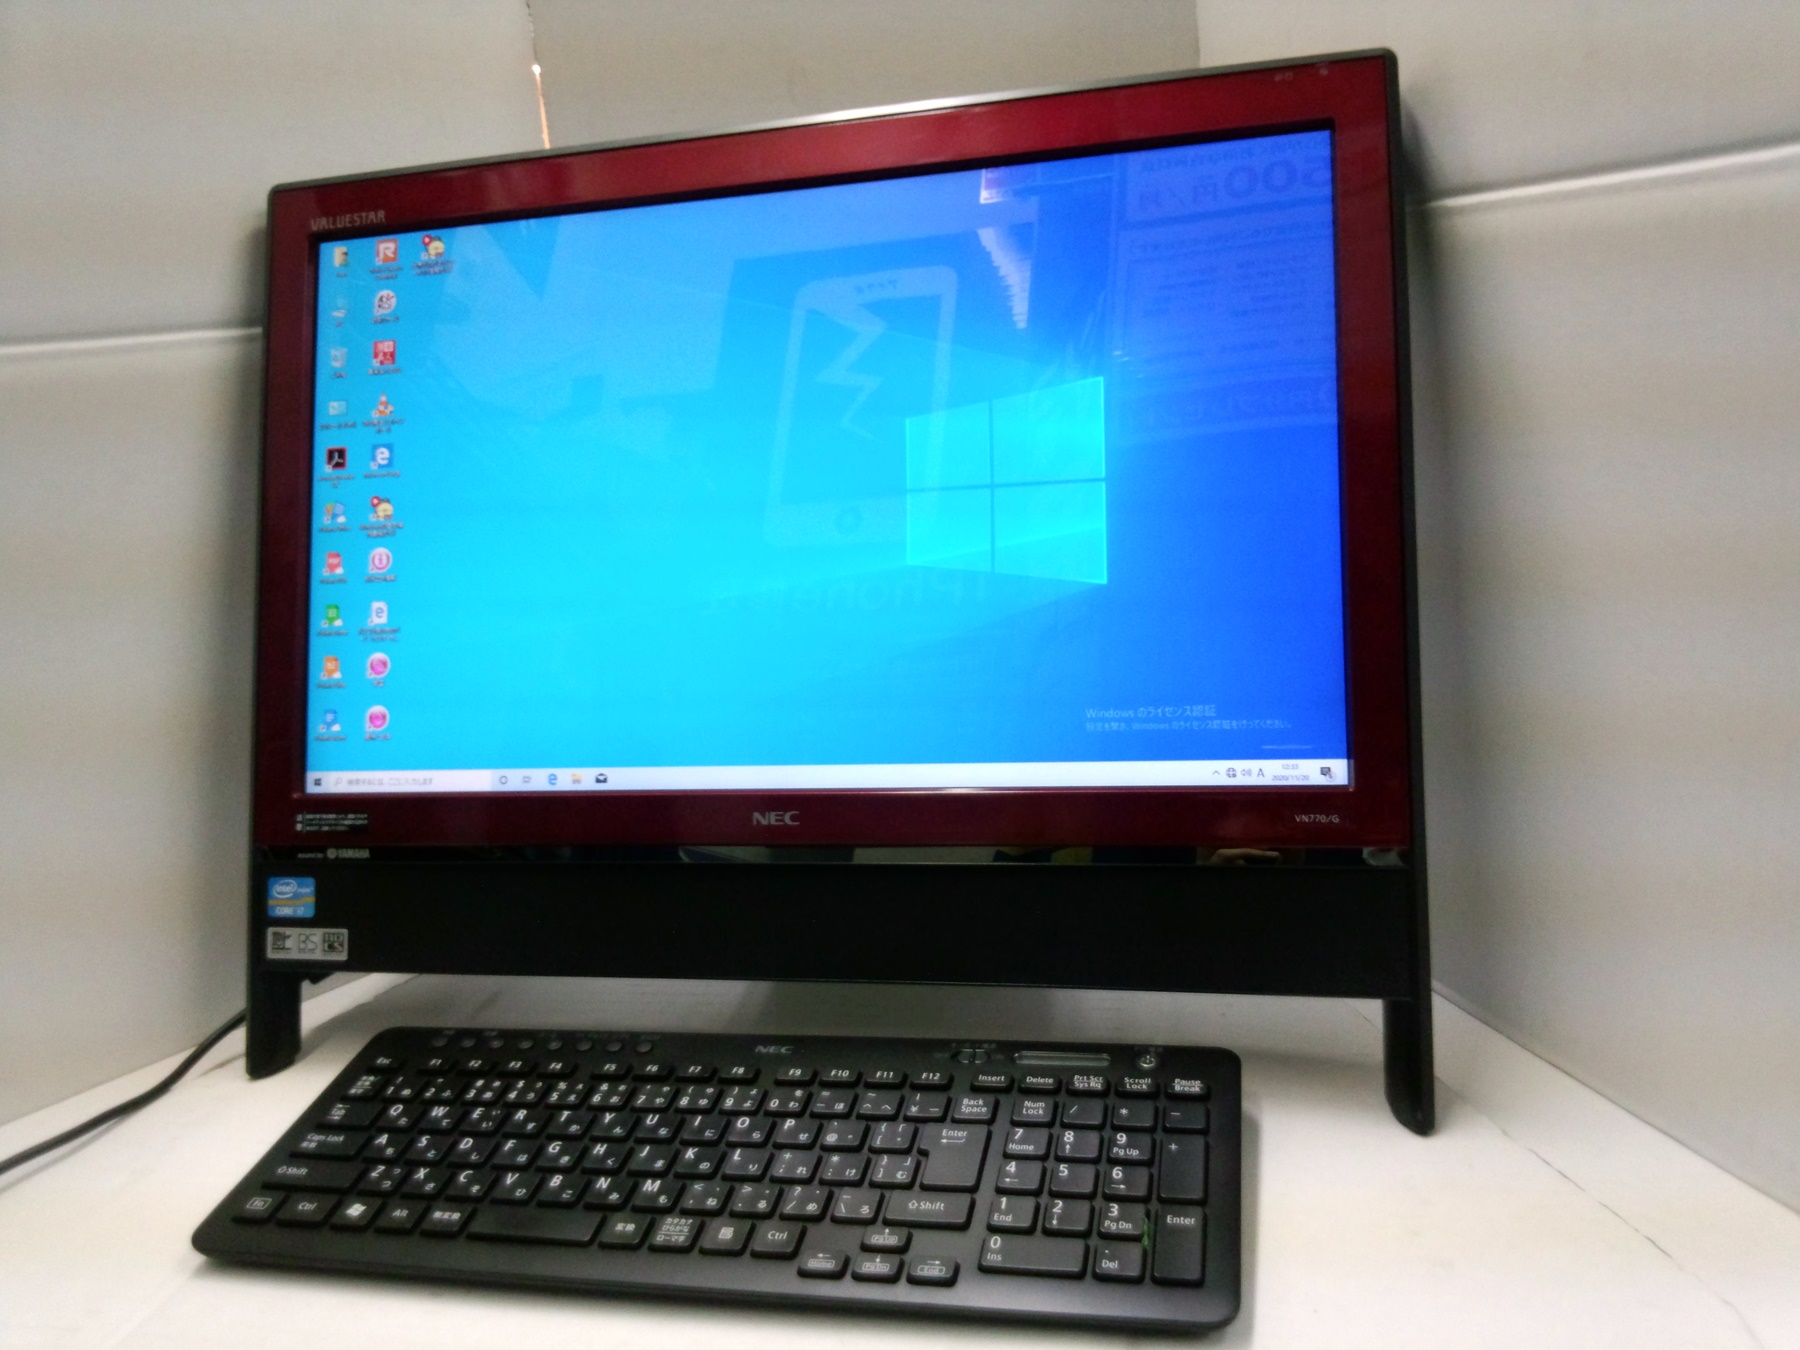 最新アイテム  2TB i7 高性能Core デスクトップ一体型PC VALUESTAR NEC デスクトップ型PC